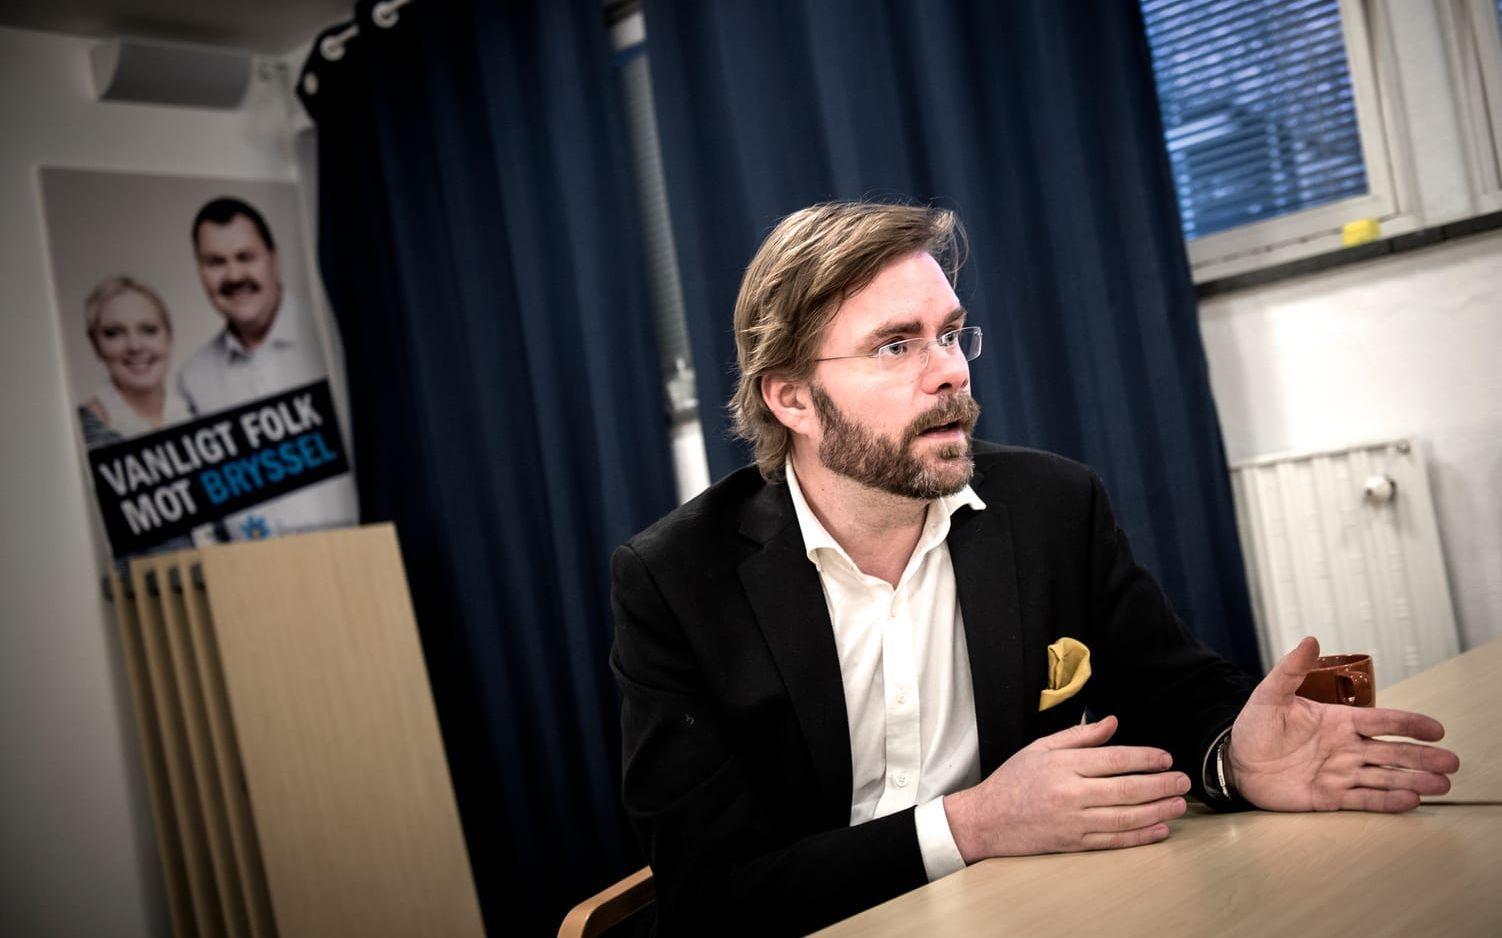 Ordföranden Jörgen Fogelklou håller inte med om kritiken mot partikulturen: "Det råder yttrandefrihet inom partiet. Bild: Hannes Ojensa
